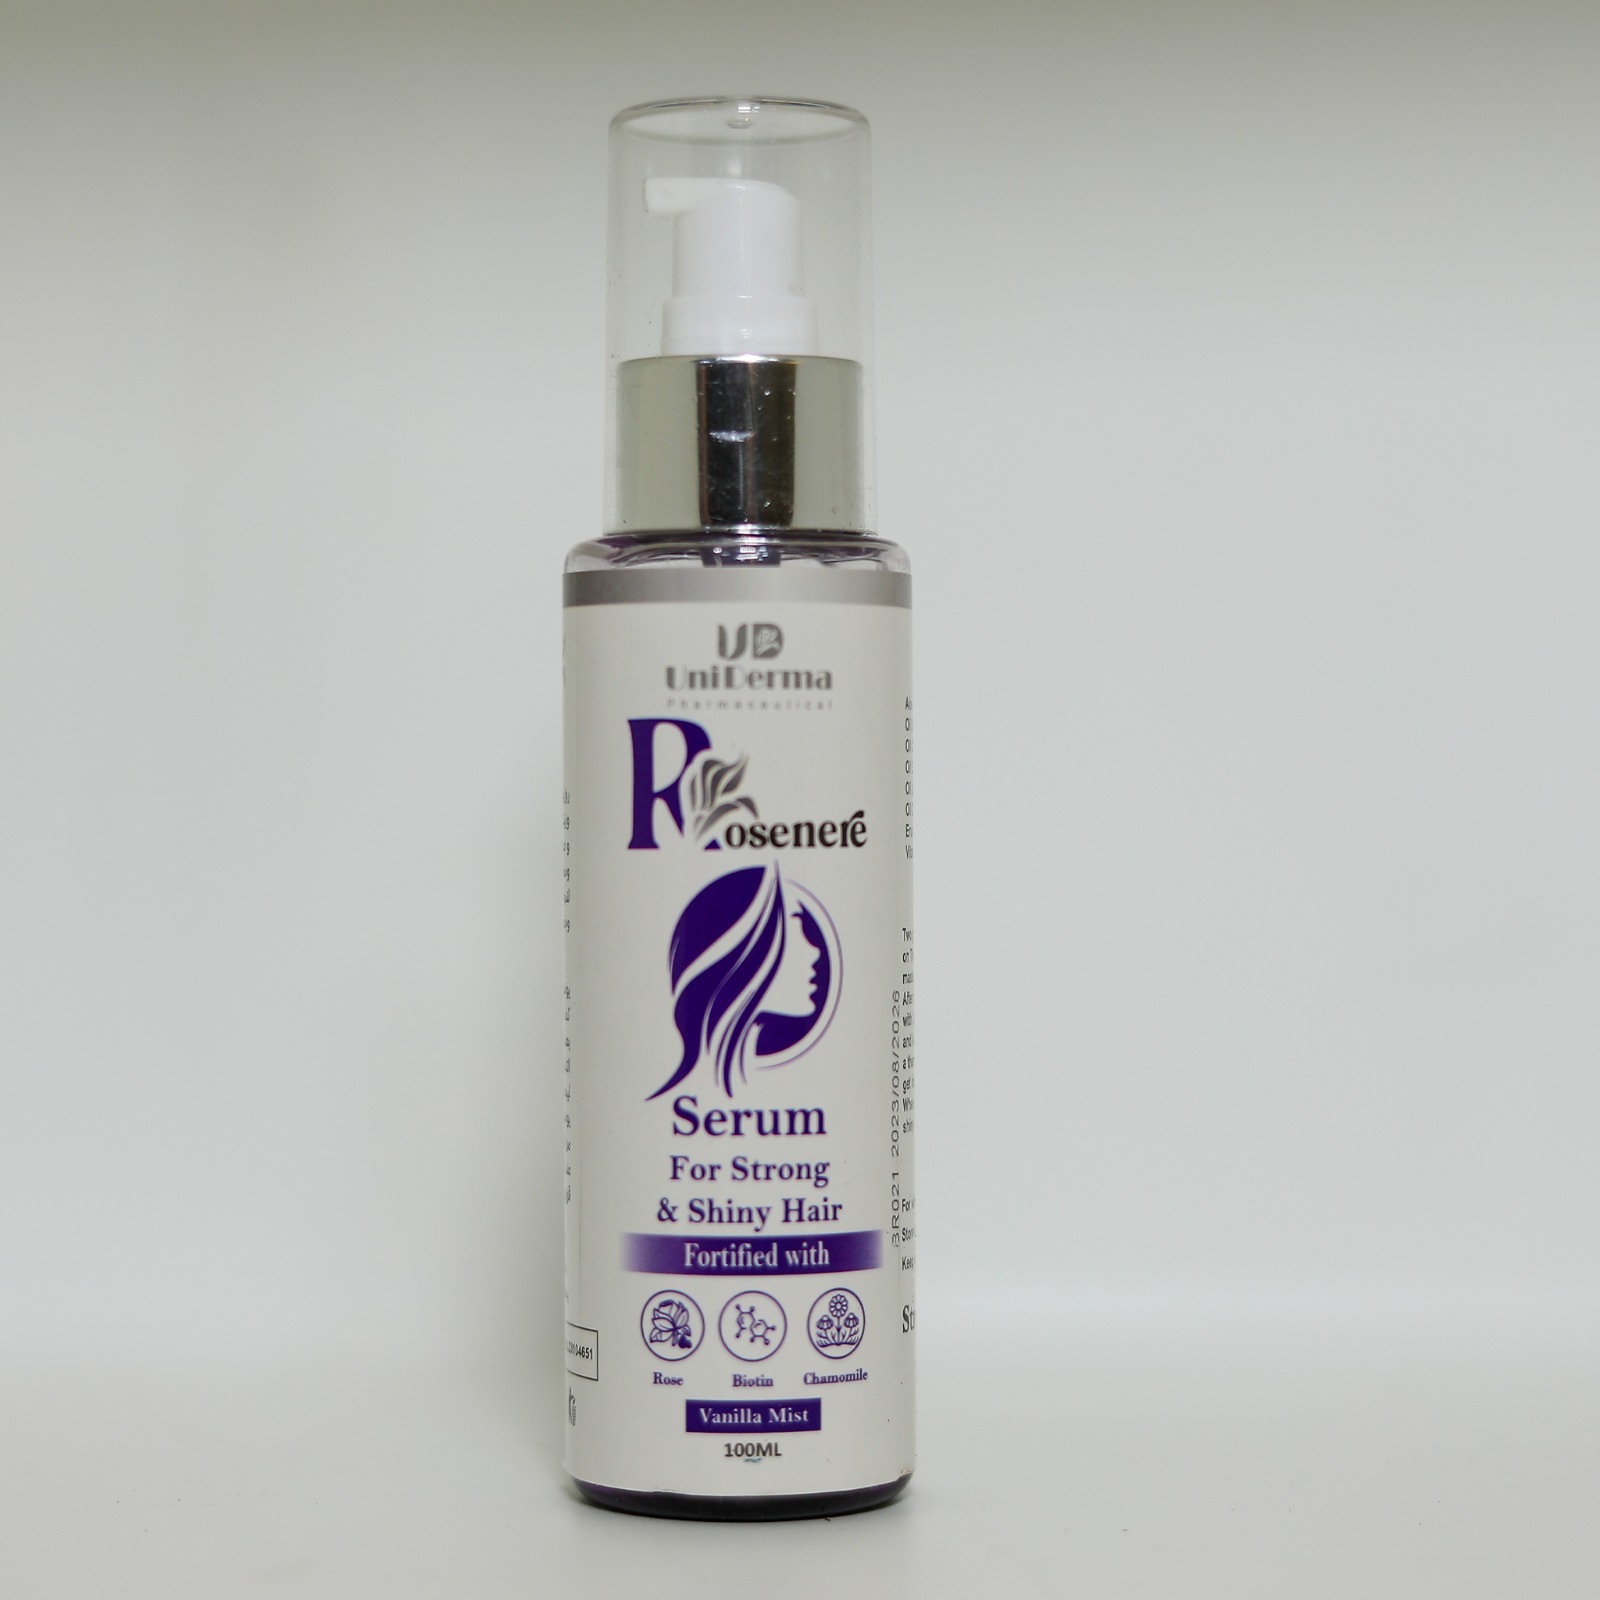 Rosenere hair serum with vanilla